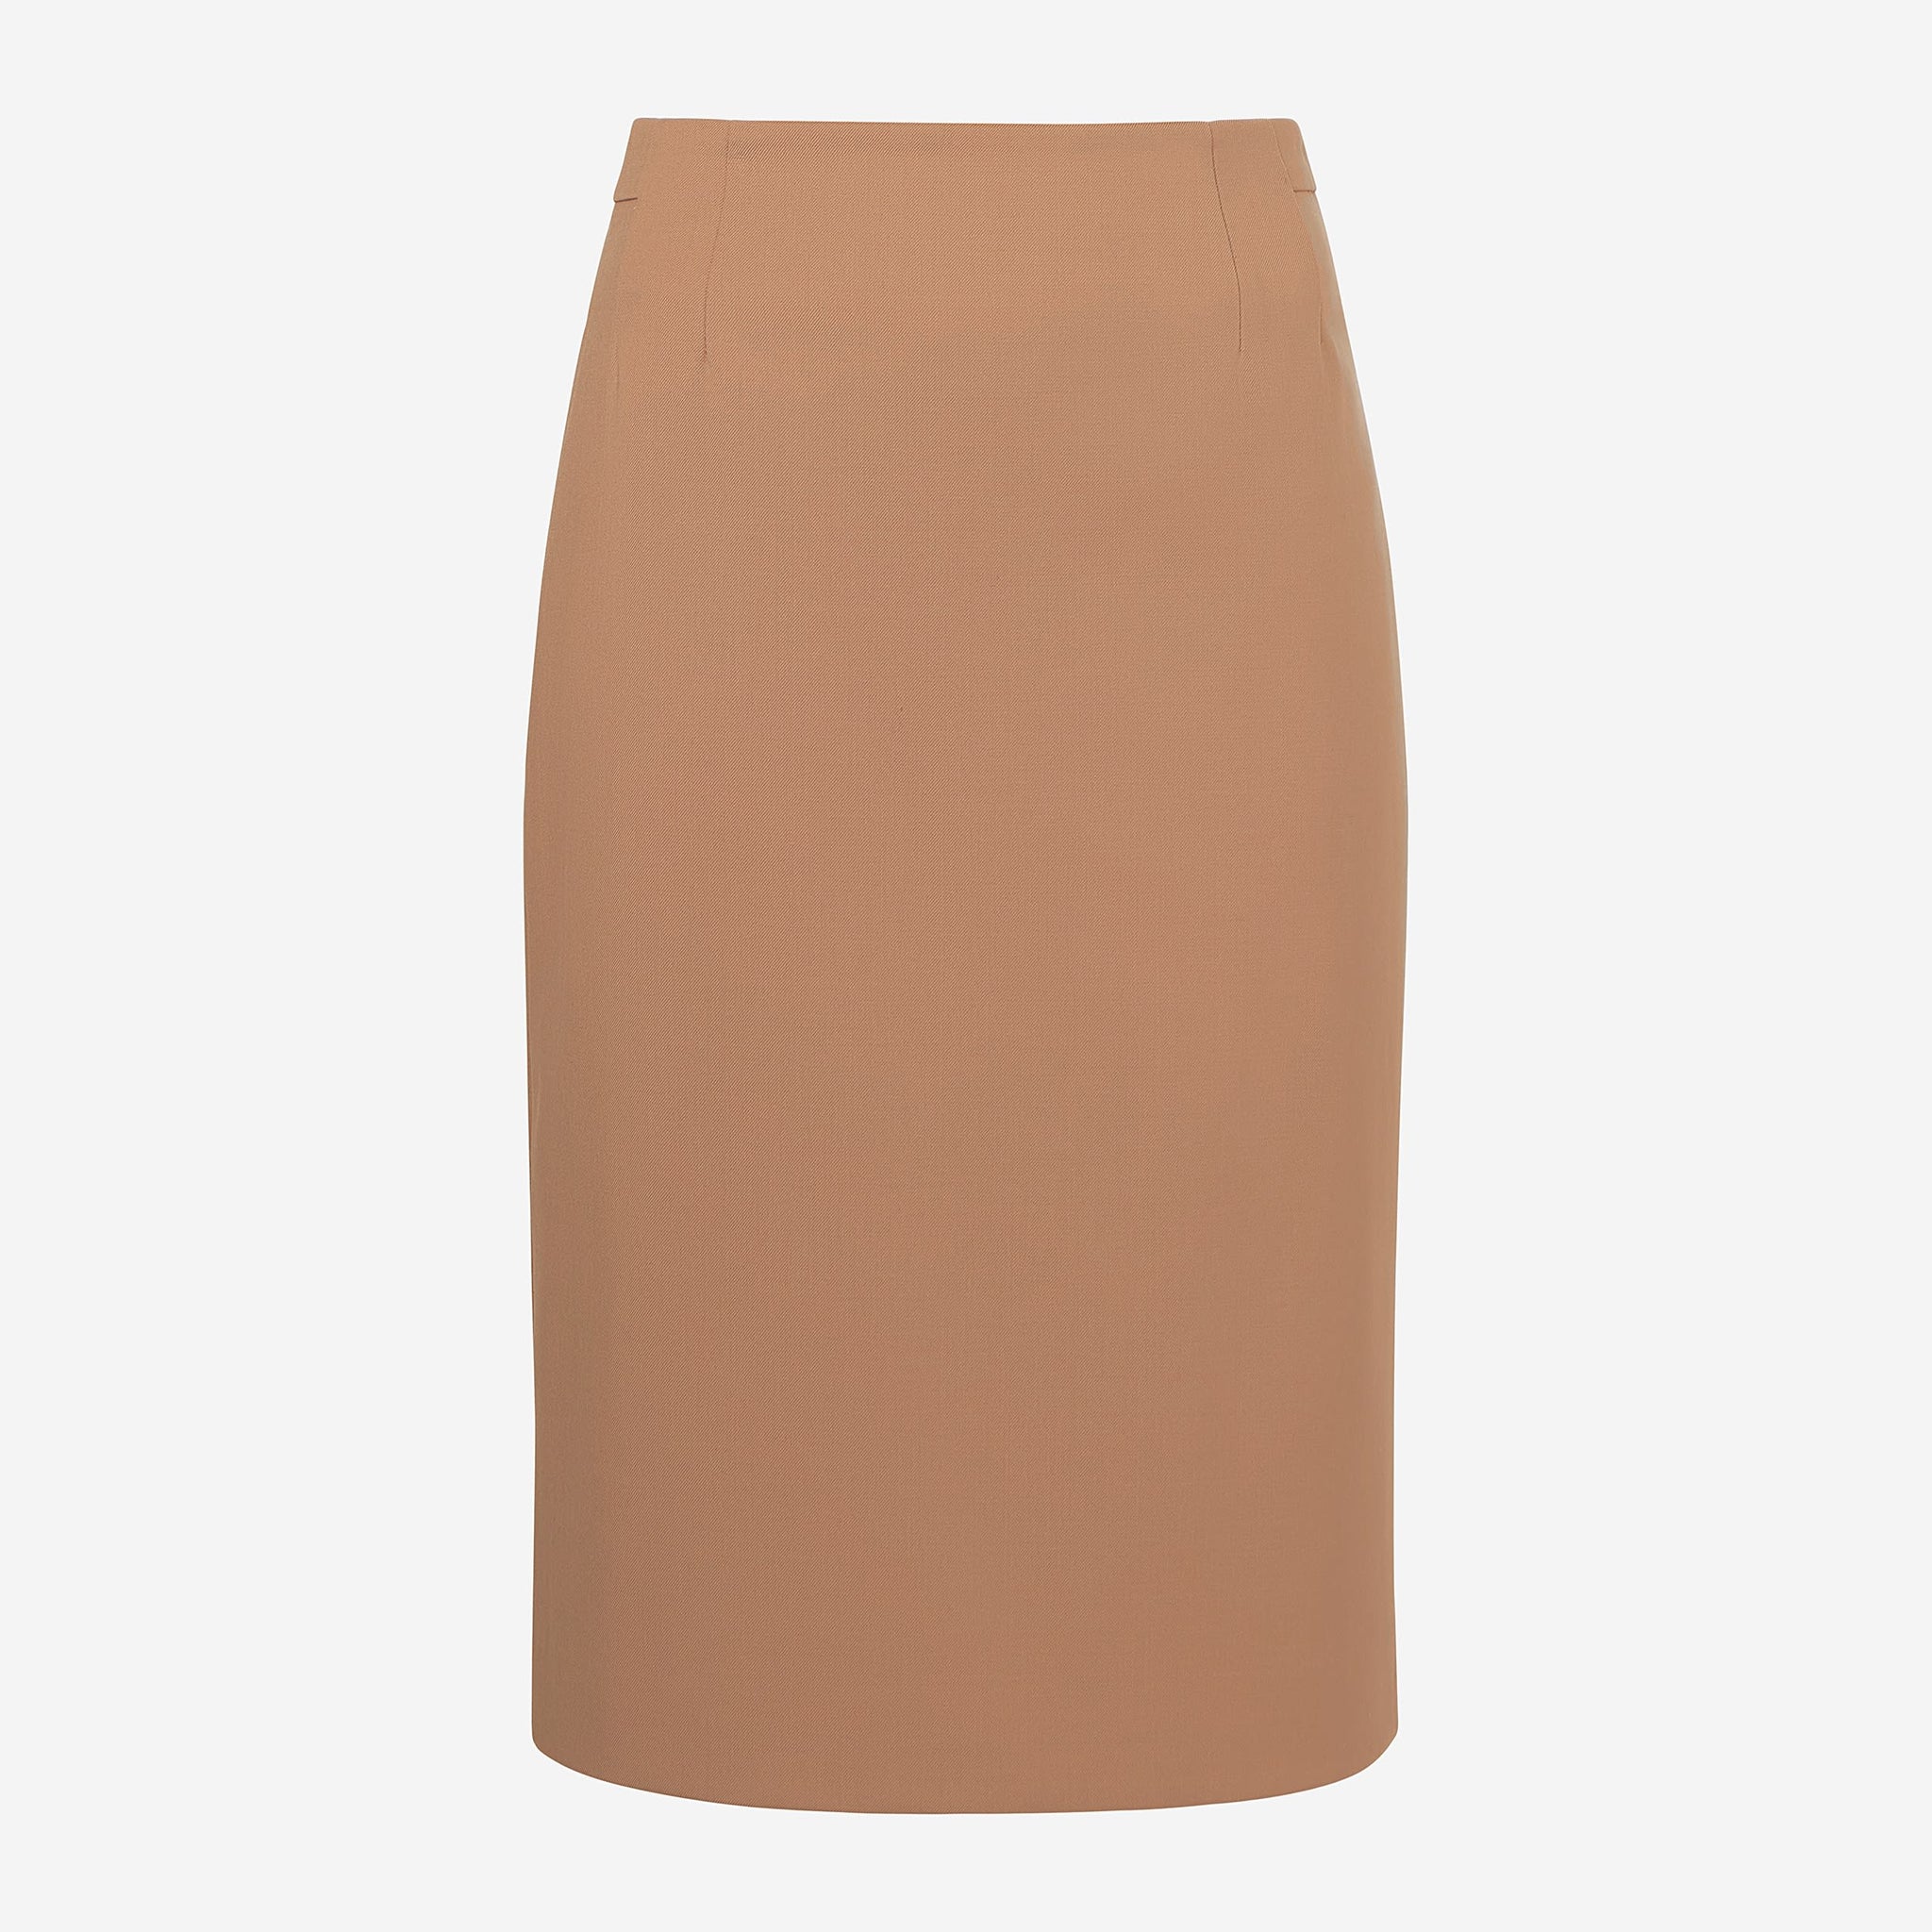 Packshot image of the Cobble Hill Skirt in Camel